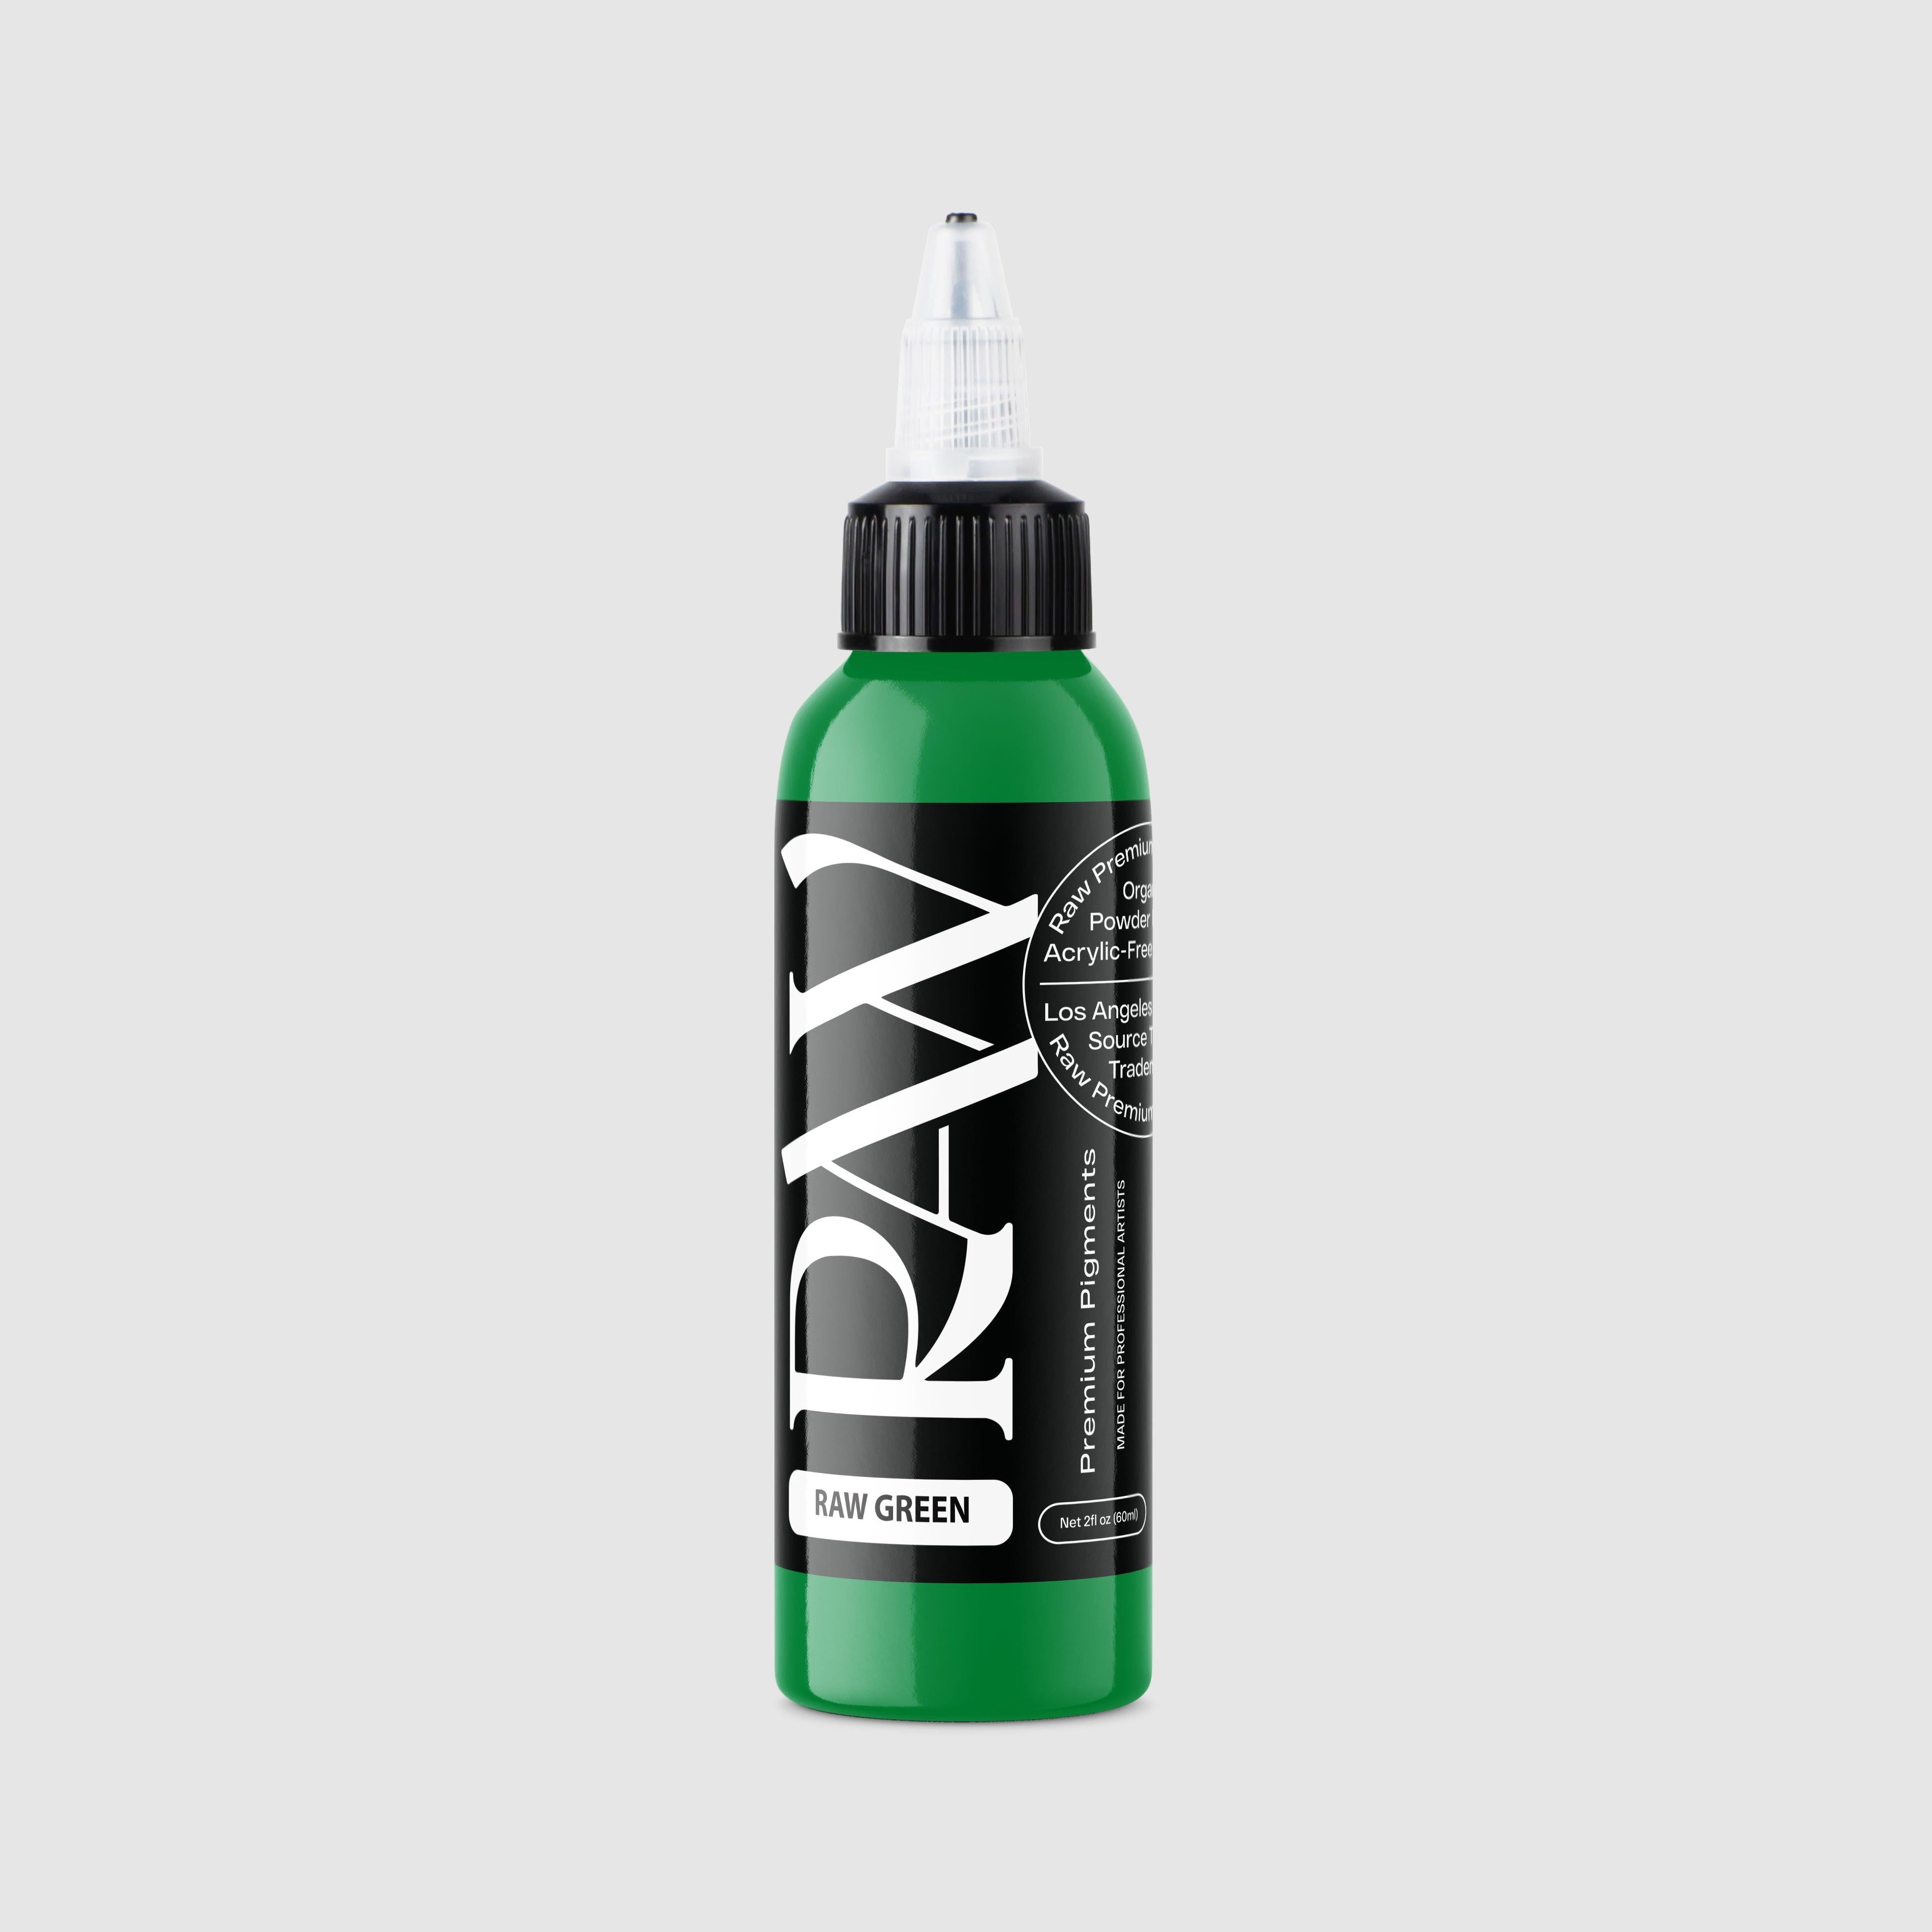 RAW GREEN - Raw Pigments